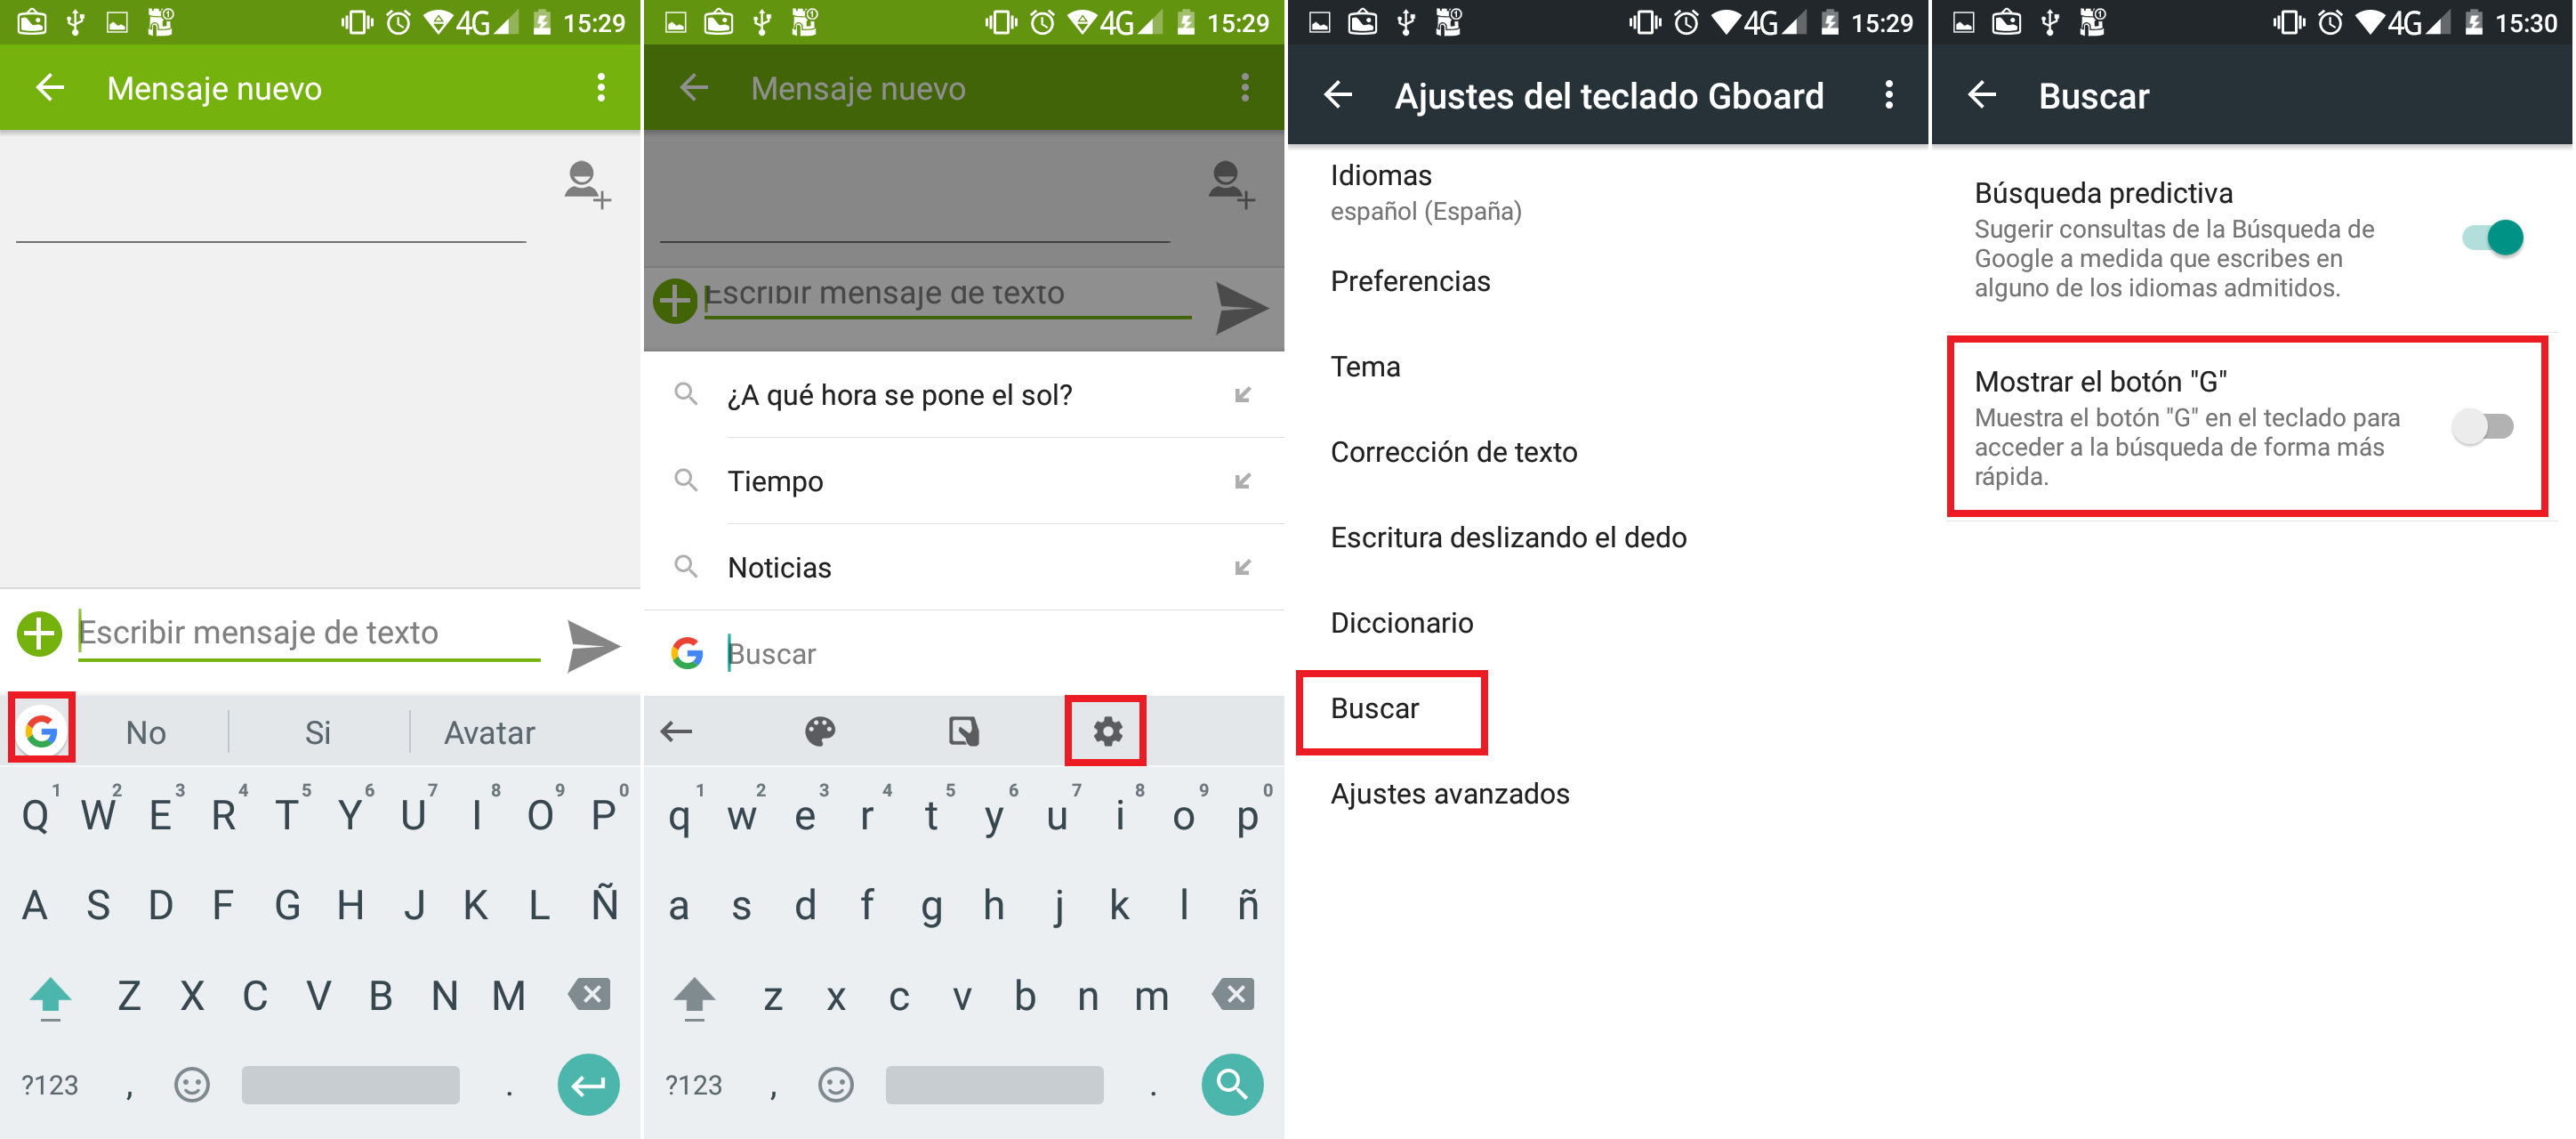 La forma frecuentemente voz 2 Maneras de activar o desactivar el botón “G” del teclado de tu Android.  (Búsqueda de Google)